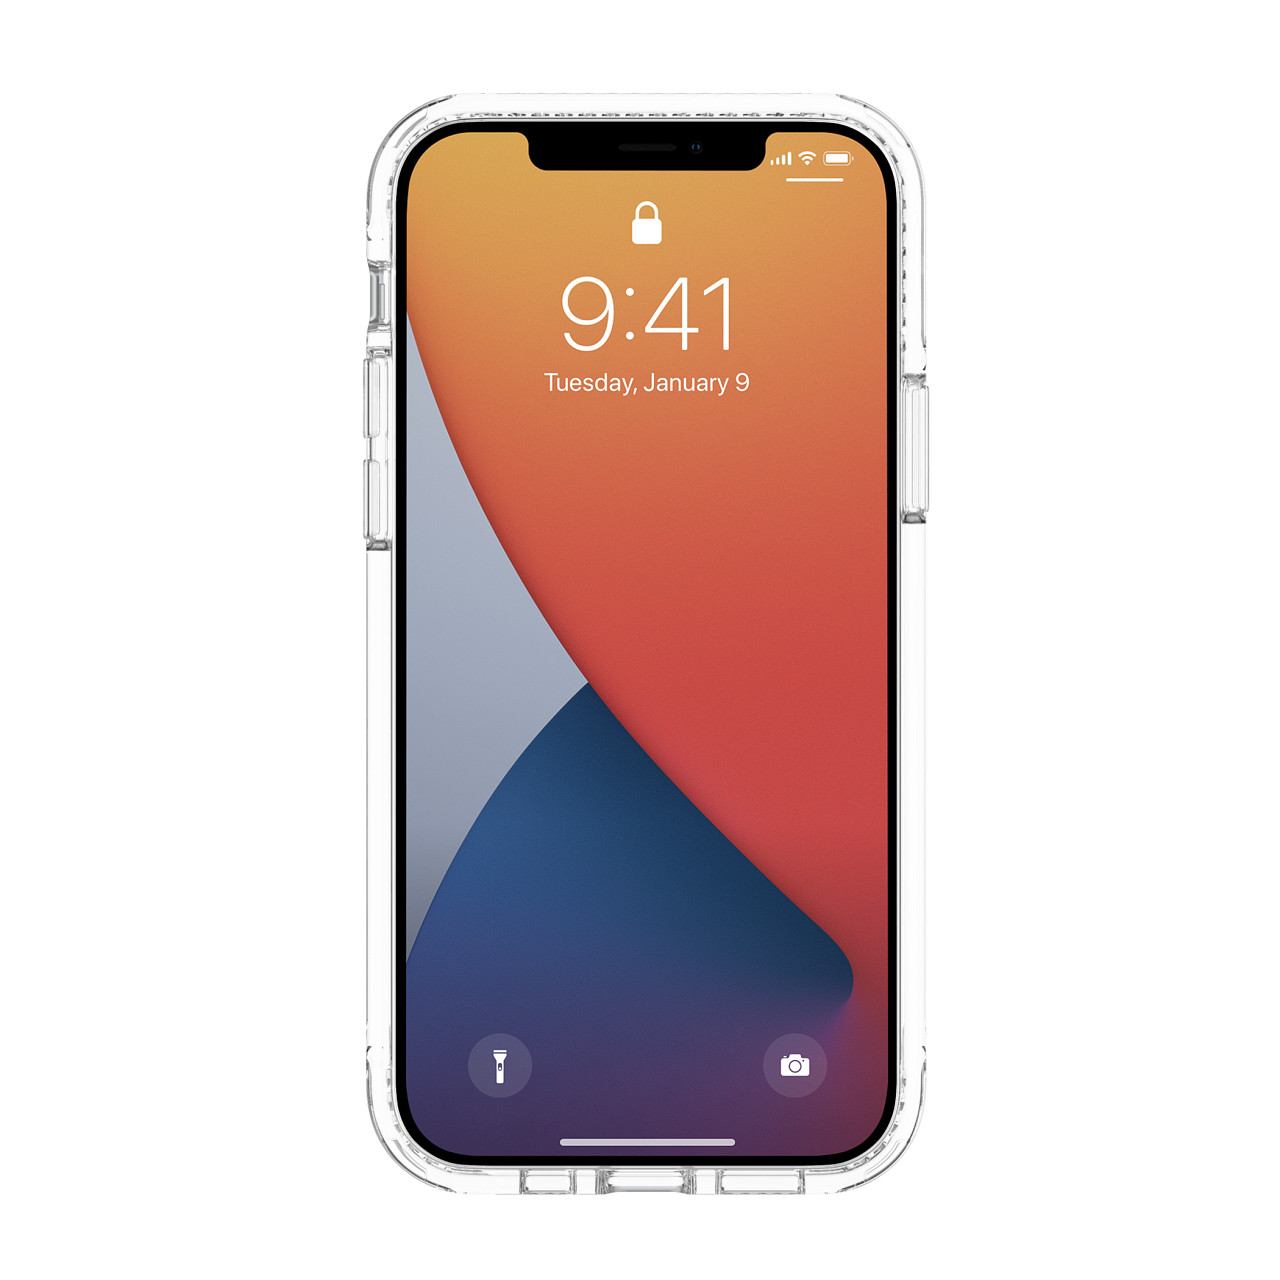 เคส Incipio รุ่น Slim Case - iPhone 12 / 12 Pro - สีใส